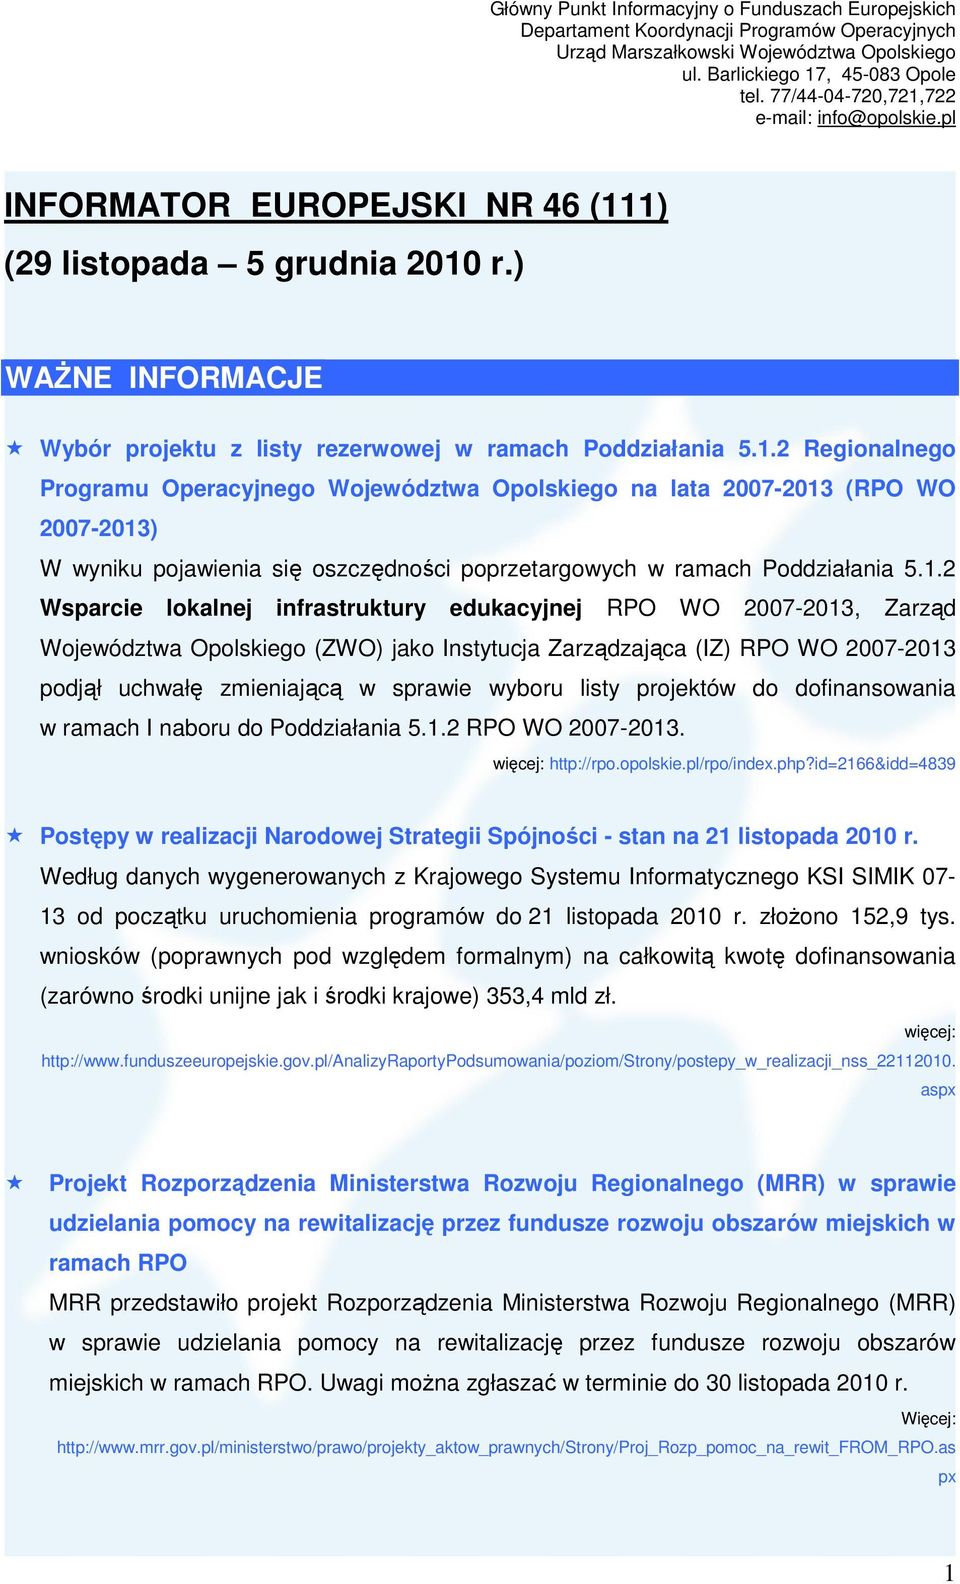 1.2 Wsparcie lokalnej infrastruktury edukacyjnej RPO WO 2007-2013, Zarząd Województwa Opolskiego (ZWO) jako Instytucja Zarządzająca (IZ) RPO WO 2007-2013 podjął uchwałę zmieniającą w sprawie wyboru